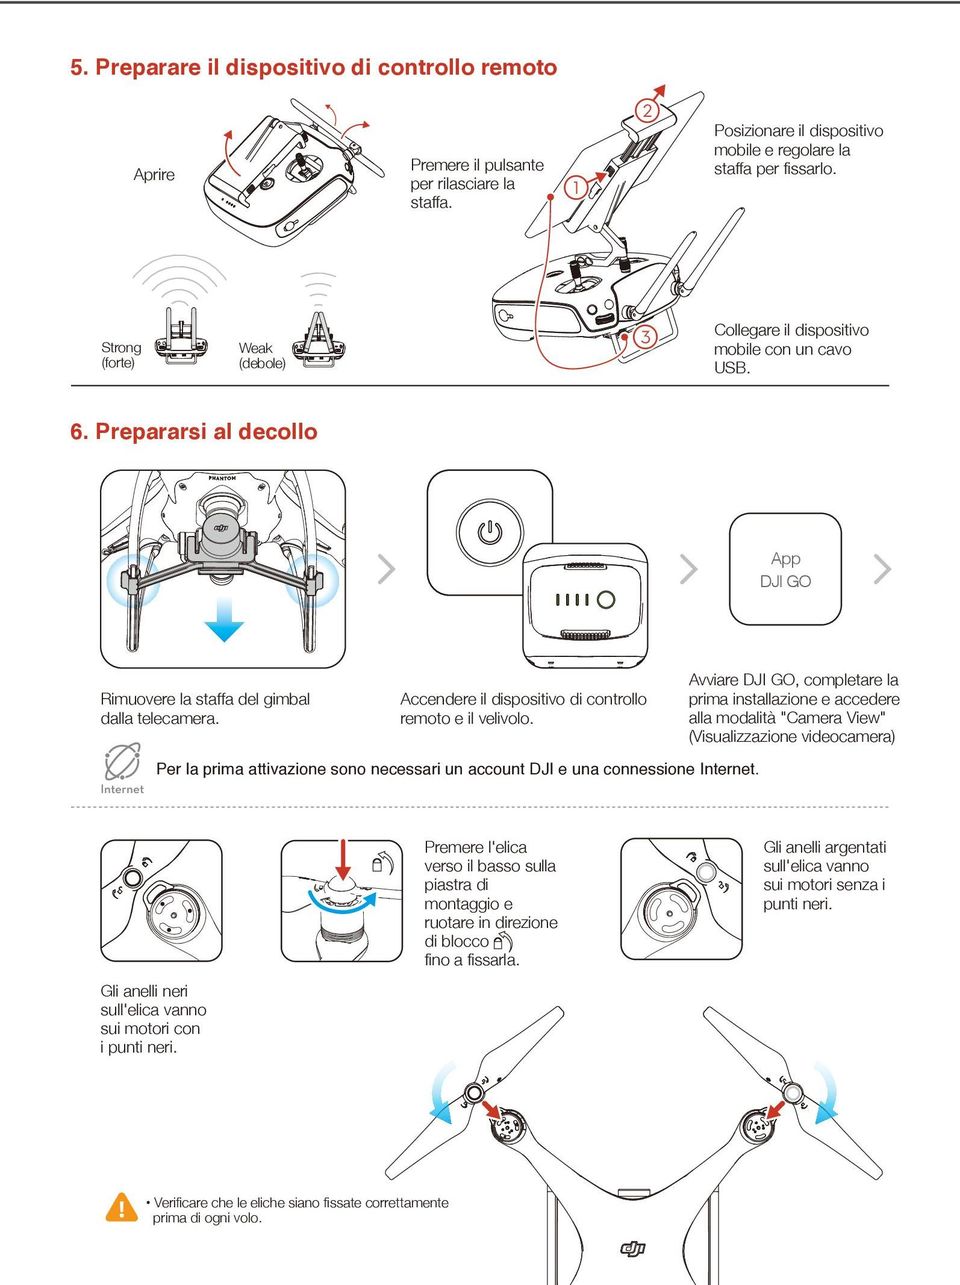 Prepararsi al decollo App DJI GO Rimuovere la staffa del gimbal dalla telecamera. Accendere il dispositivo di controllo remoto e il velivolo.